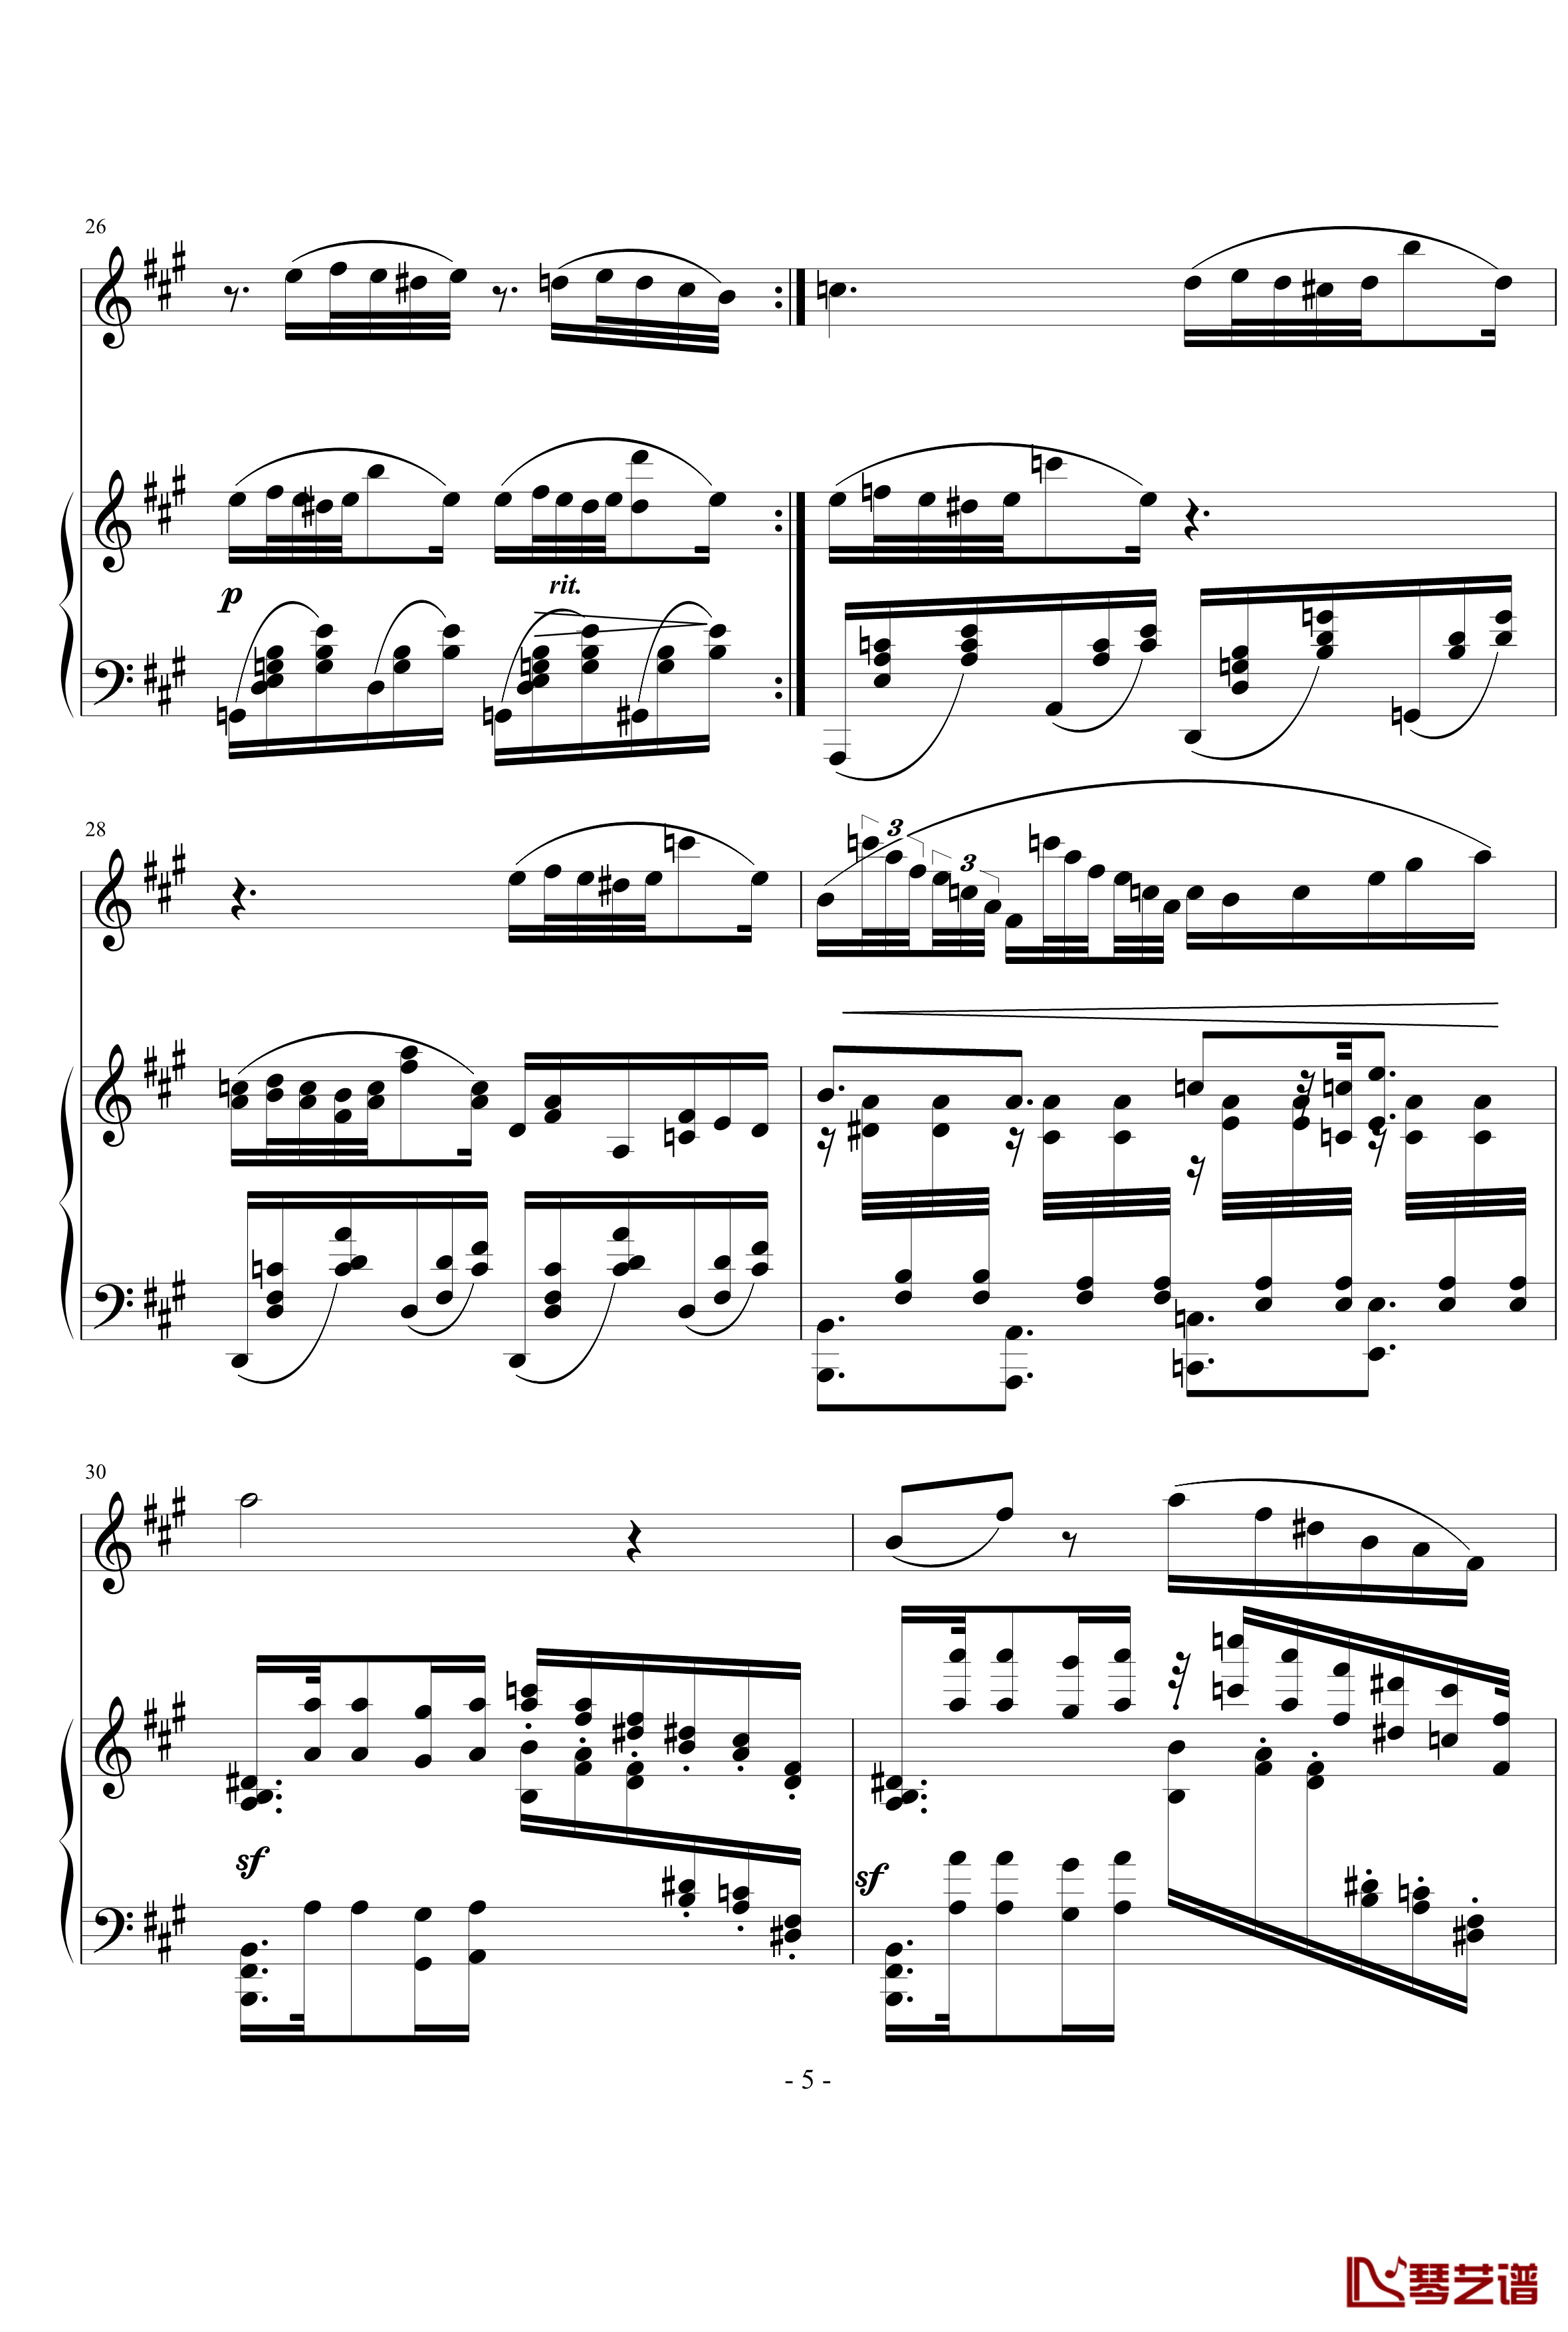 钢琴单簧管小奏鸣曲钢琴谱-nyride5